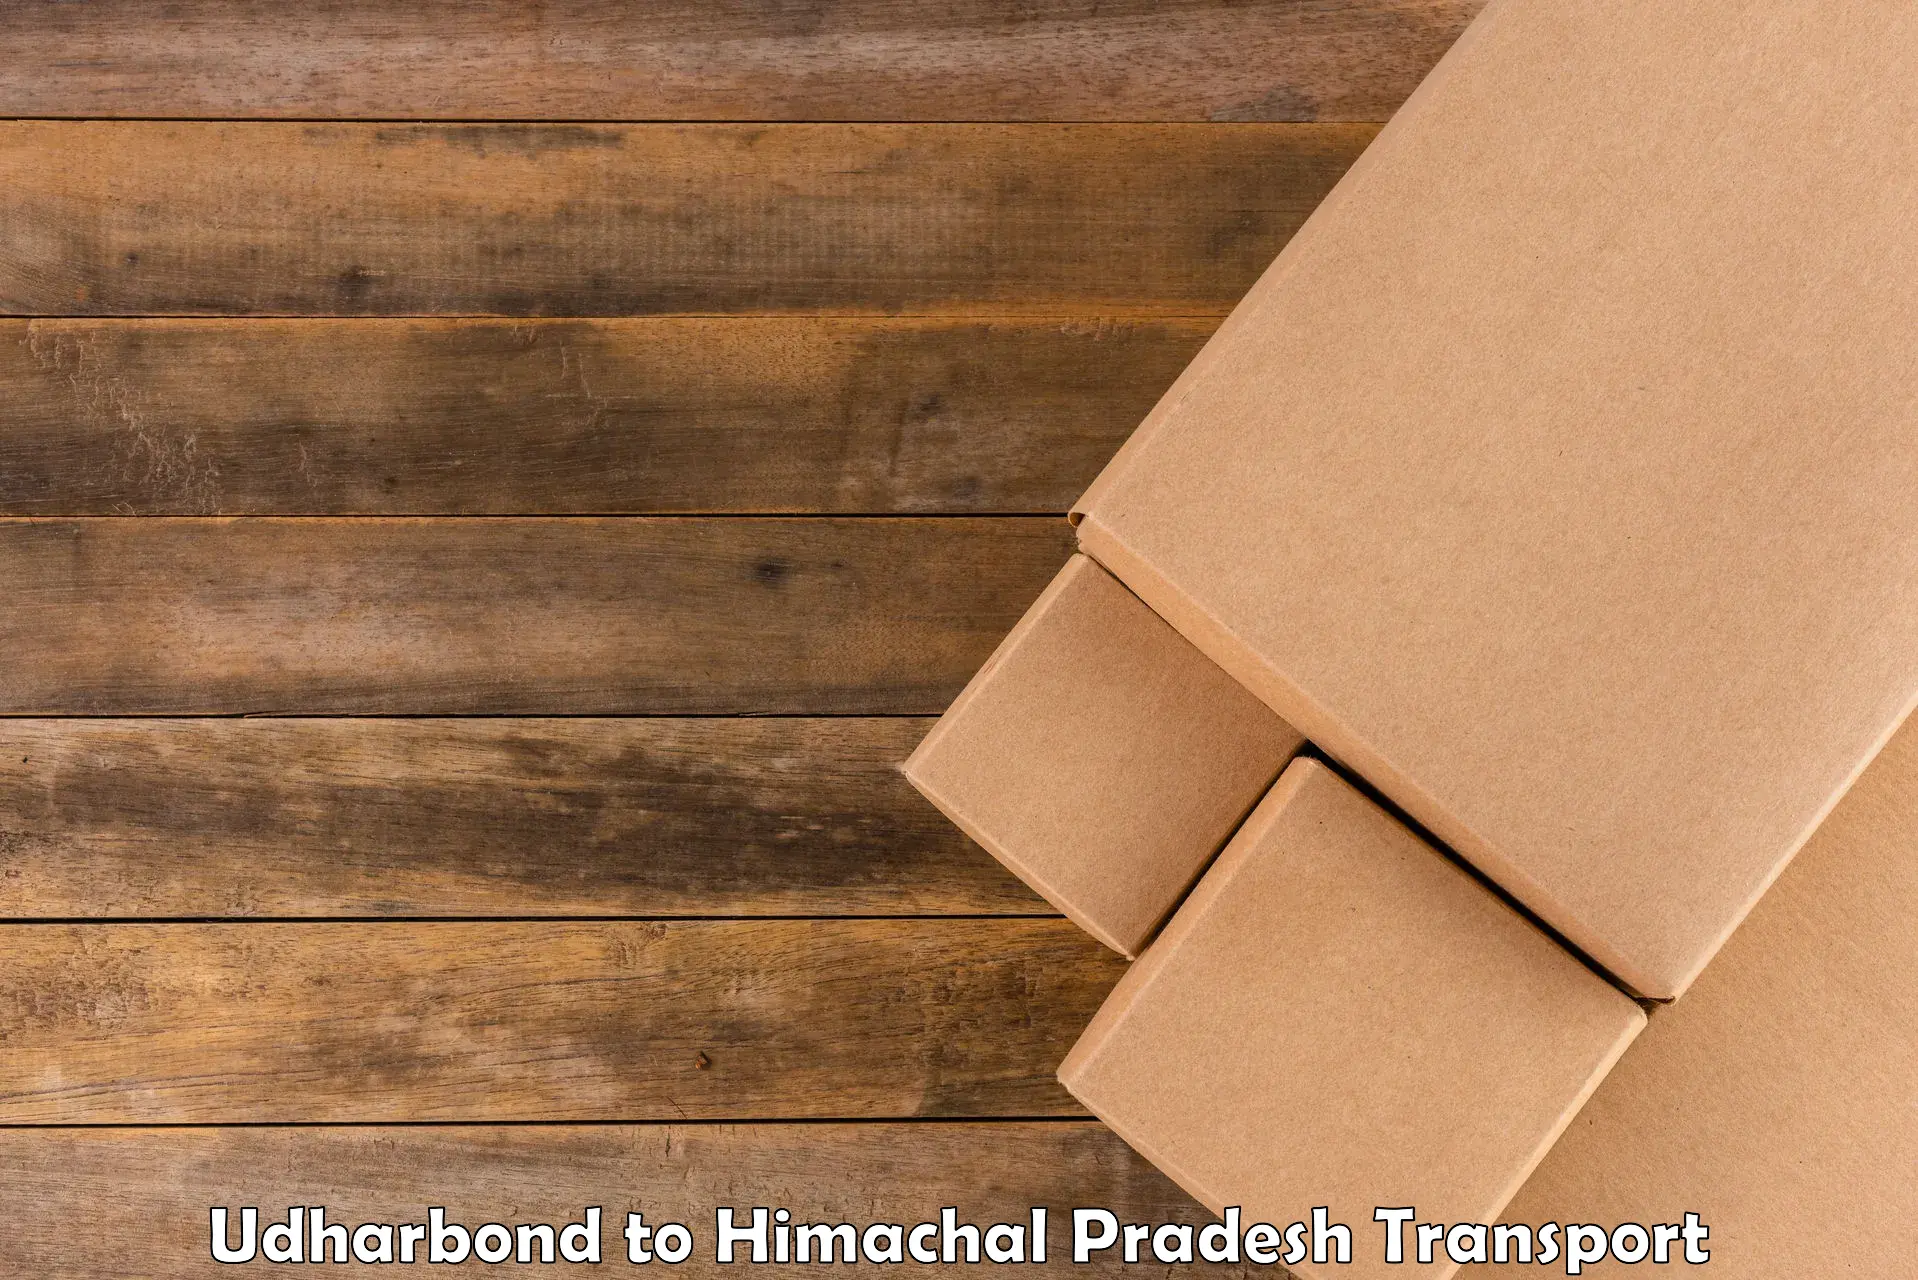 Nearest transport service Udharbond to Sandhol